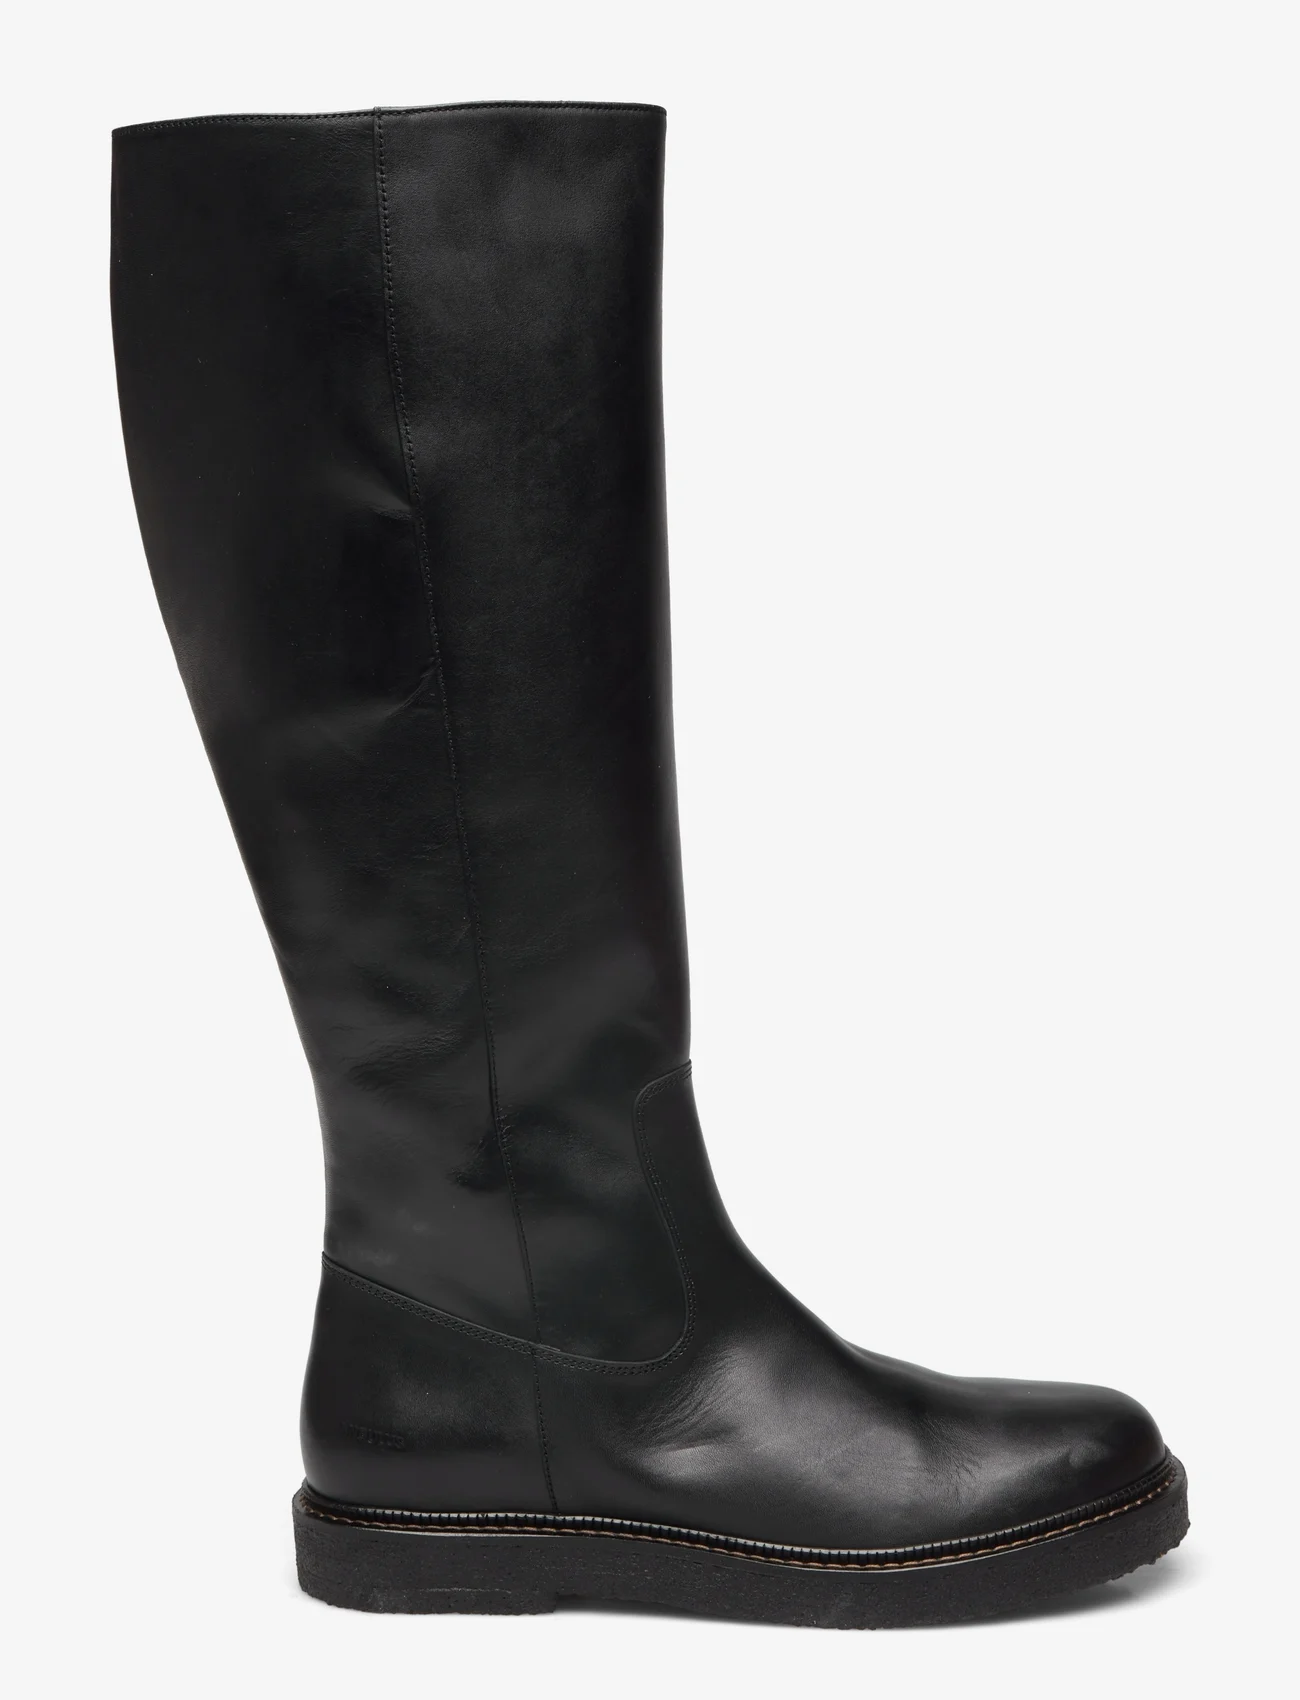 ANGULUS - Boots - flat - langskaftede støvler - 1604/001 black/black - 1